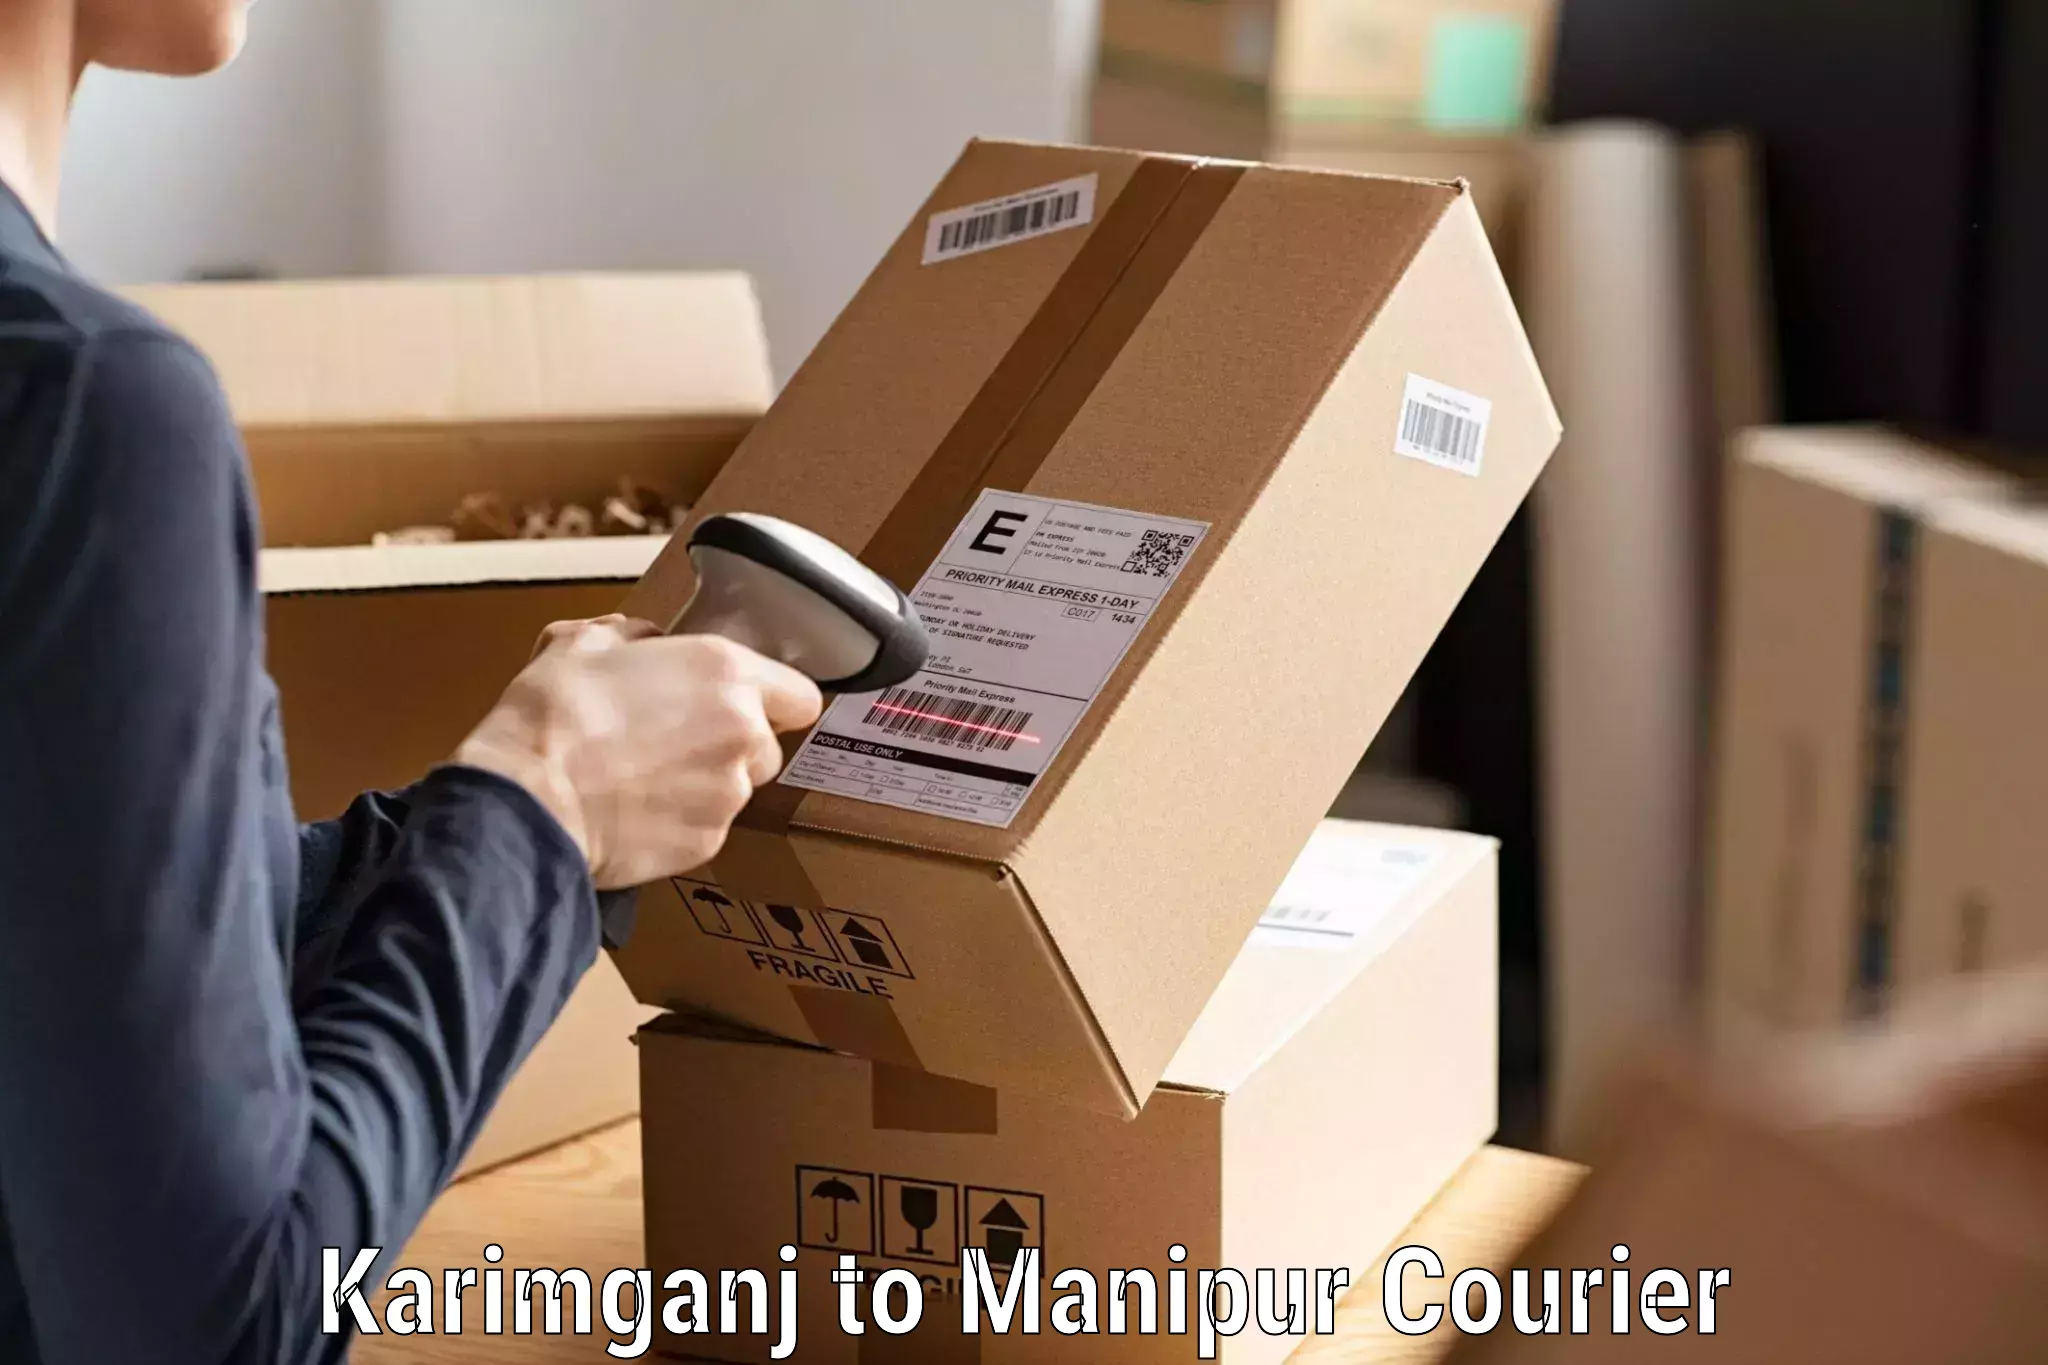 24-hour delivery options Karimganj to Kakching